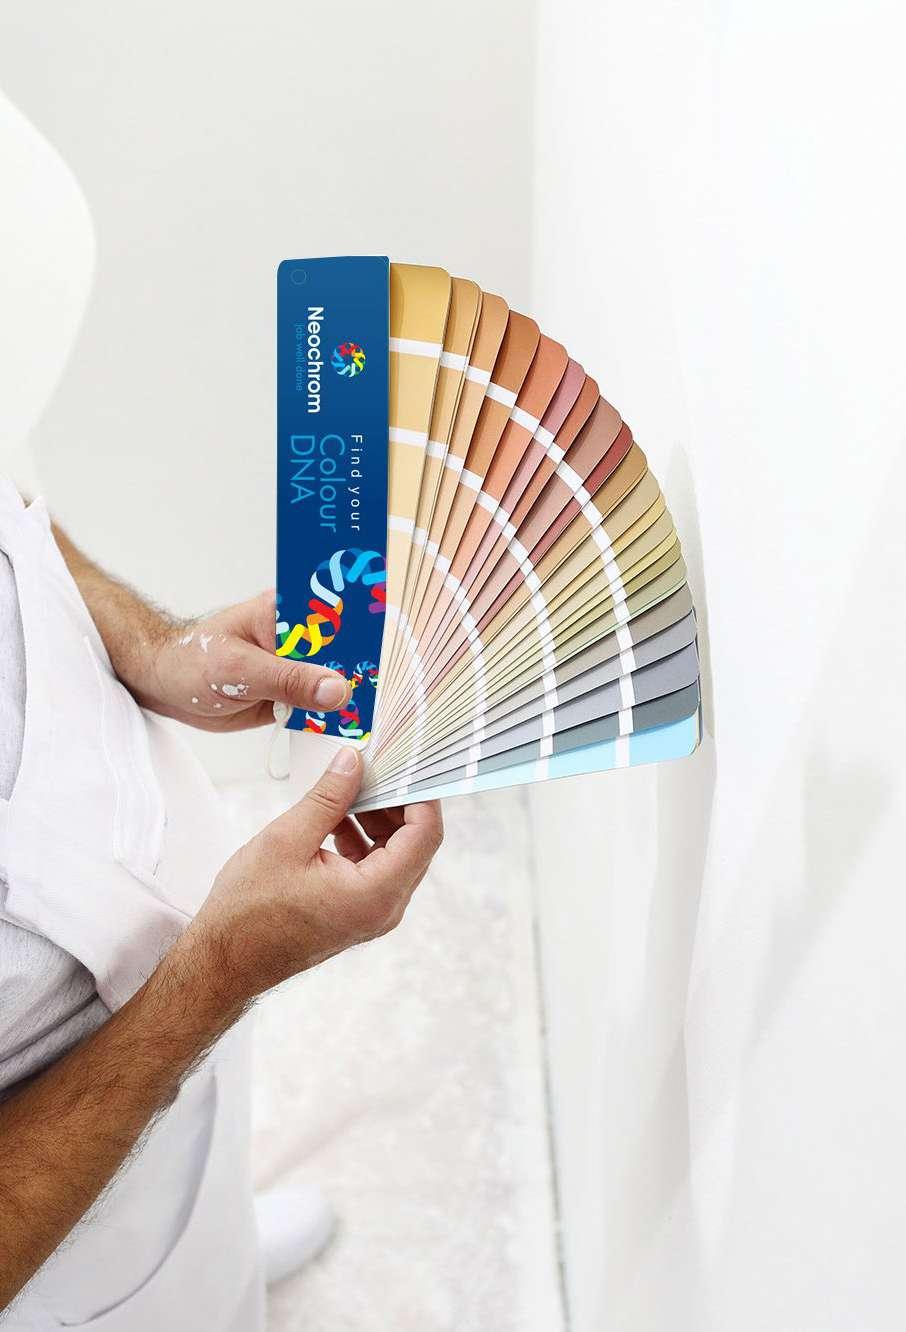 Το χρωματολόγιο "Find your DNA" της NEOCHROM είναι ένα σύνθετο χρωματολόγιο από 5,000 χρώματα, το οποίο περιέχει